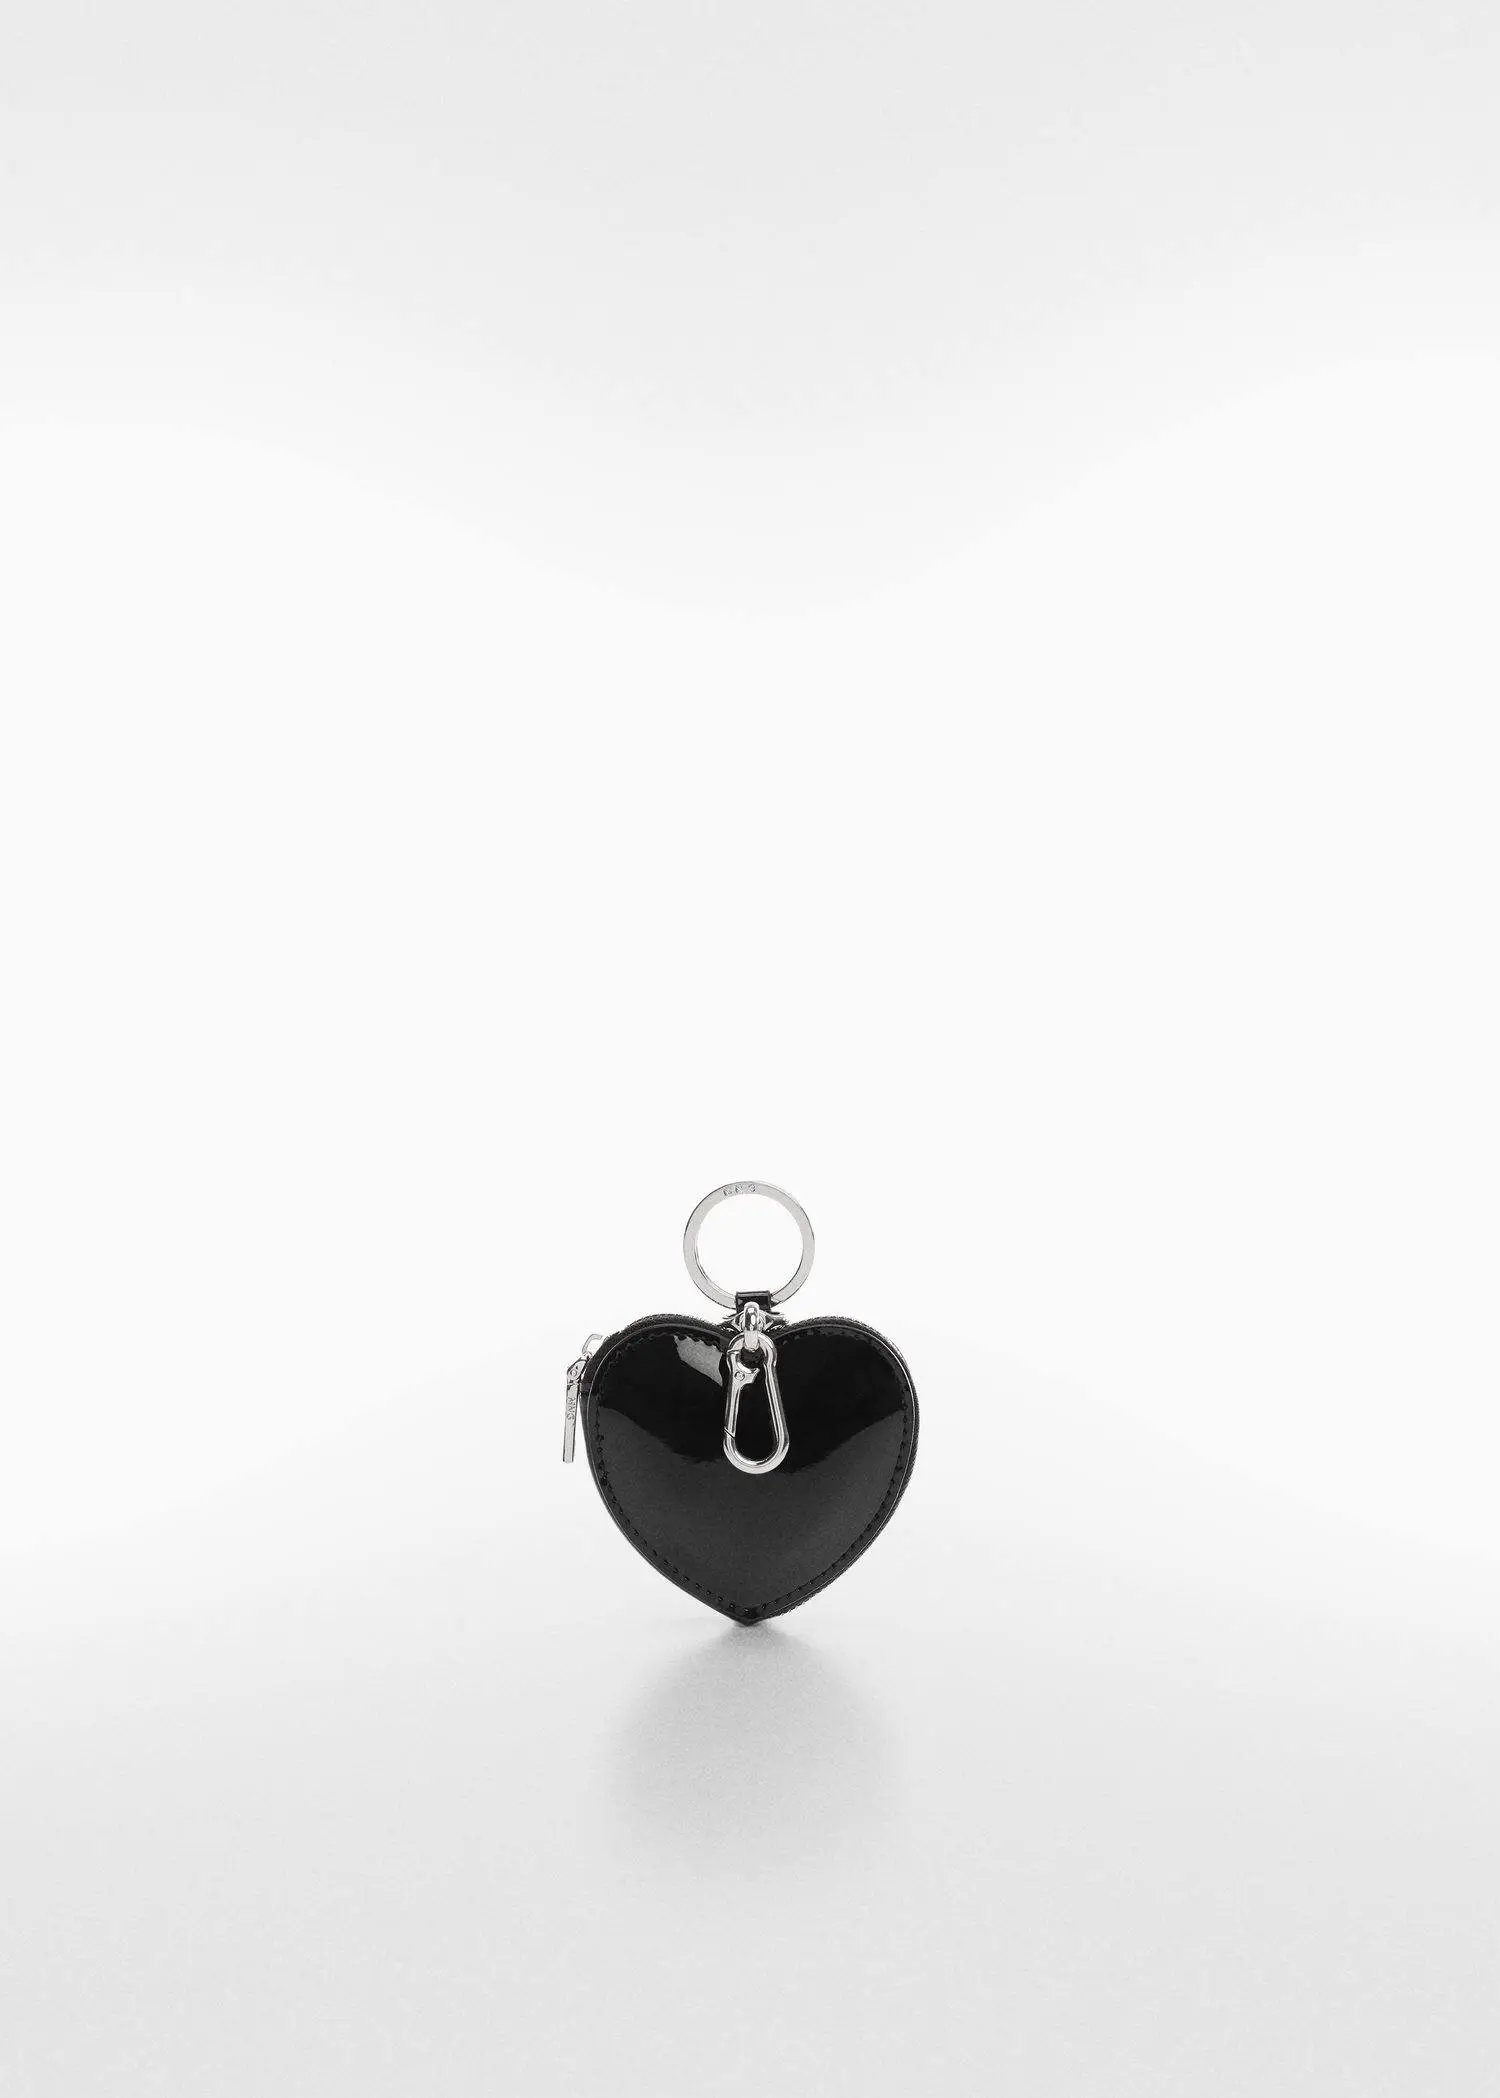 Mango Porta-moedas com chaveiro de coração. 1